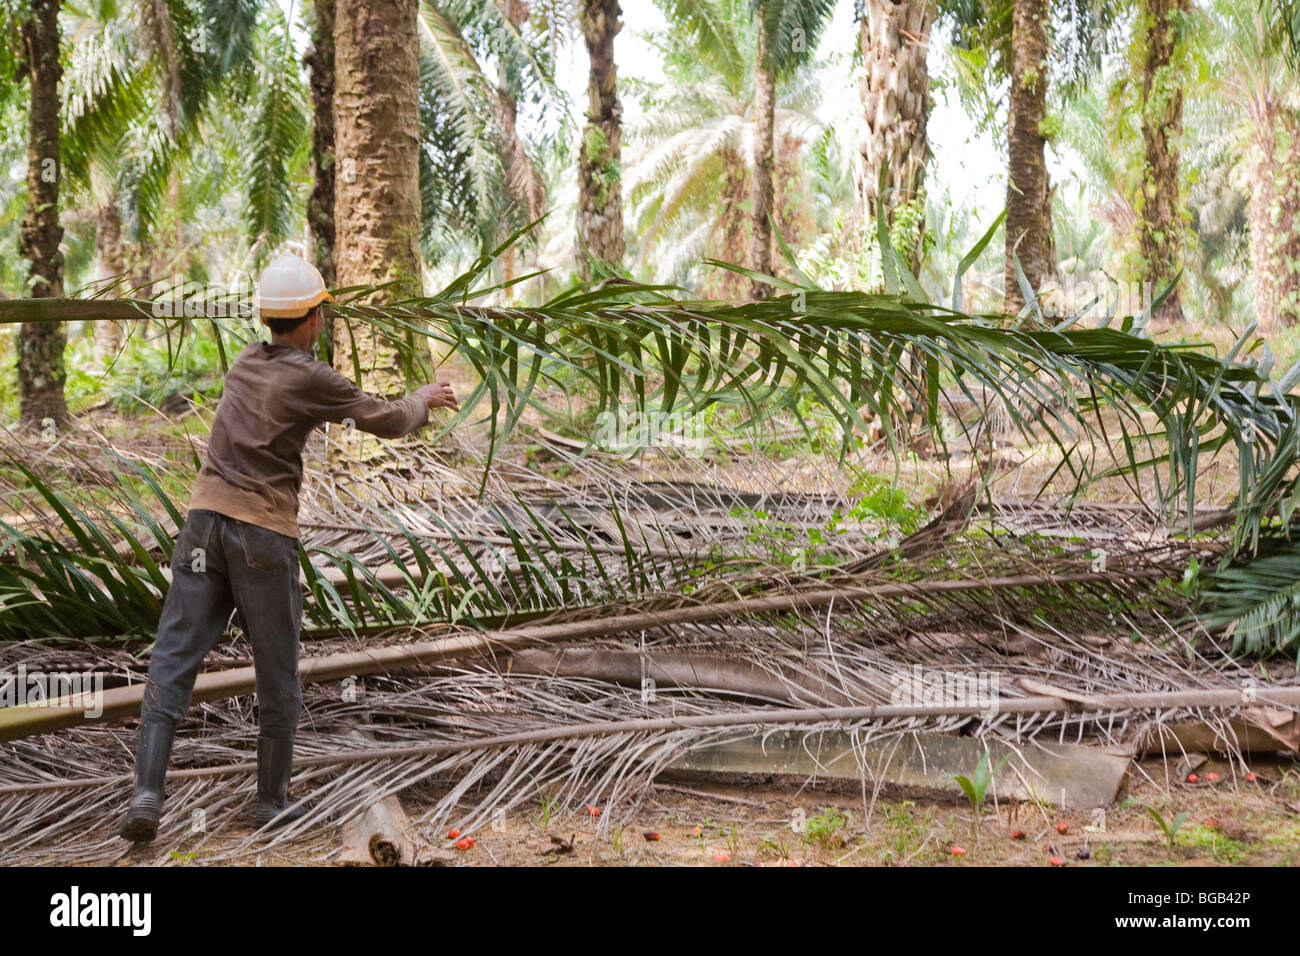 Ein Arbeiter, ein frisch geschnittenen Öl Palmwedel, mit roten Palm Früchte am Boden sammeln. Sindora Palmöl-Plantagen. Stockfoto